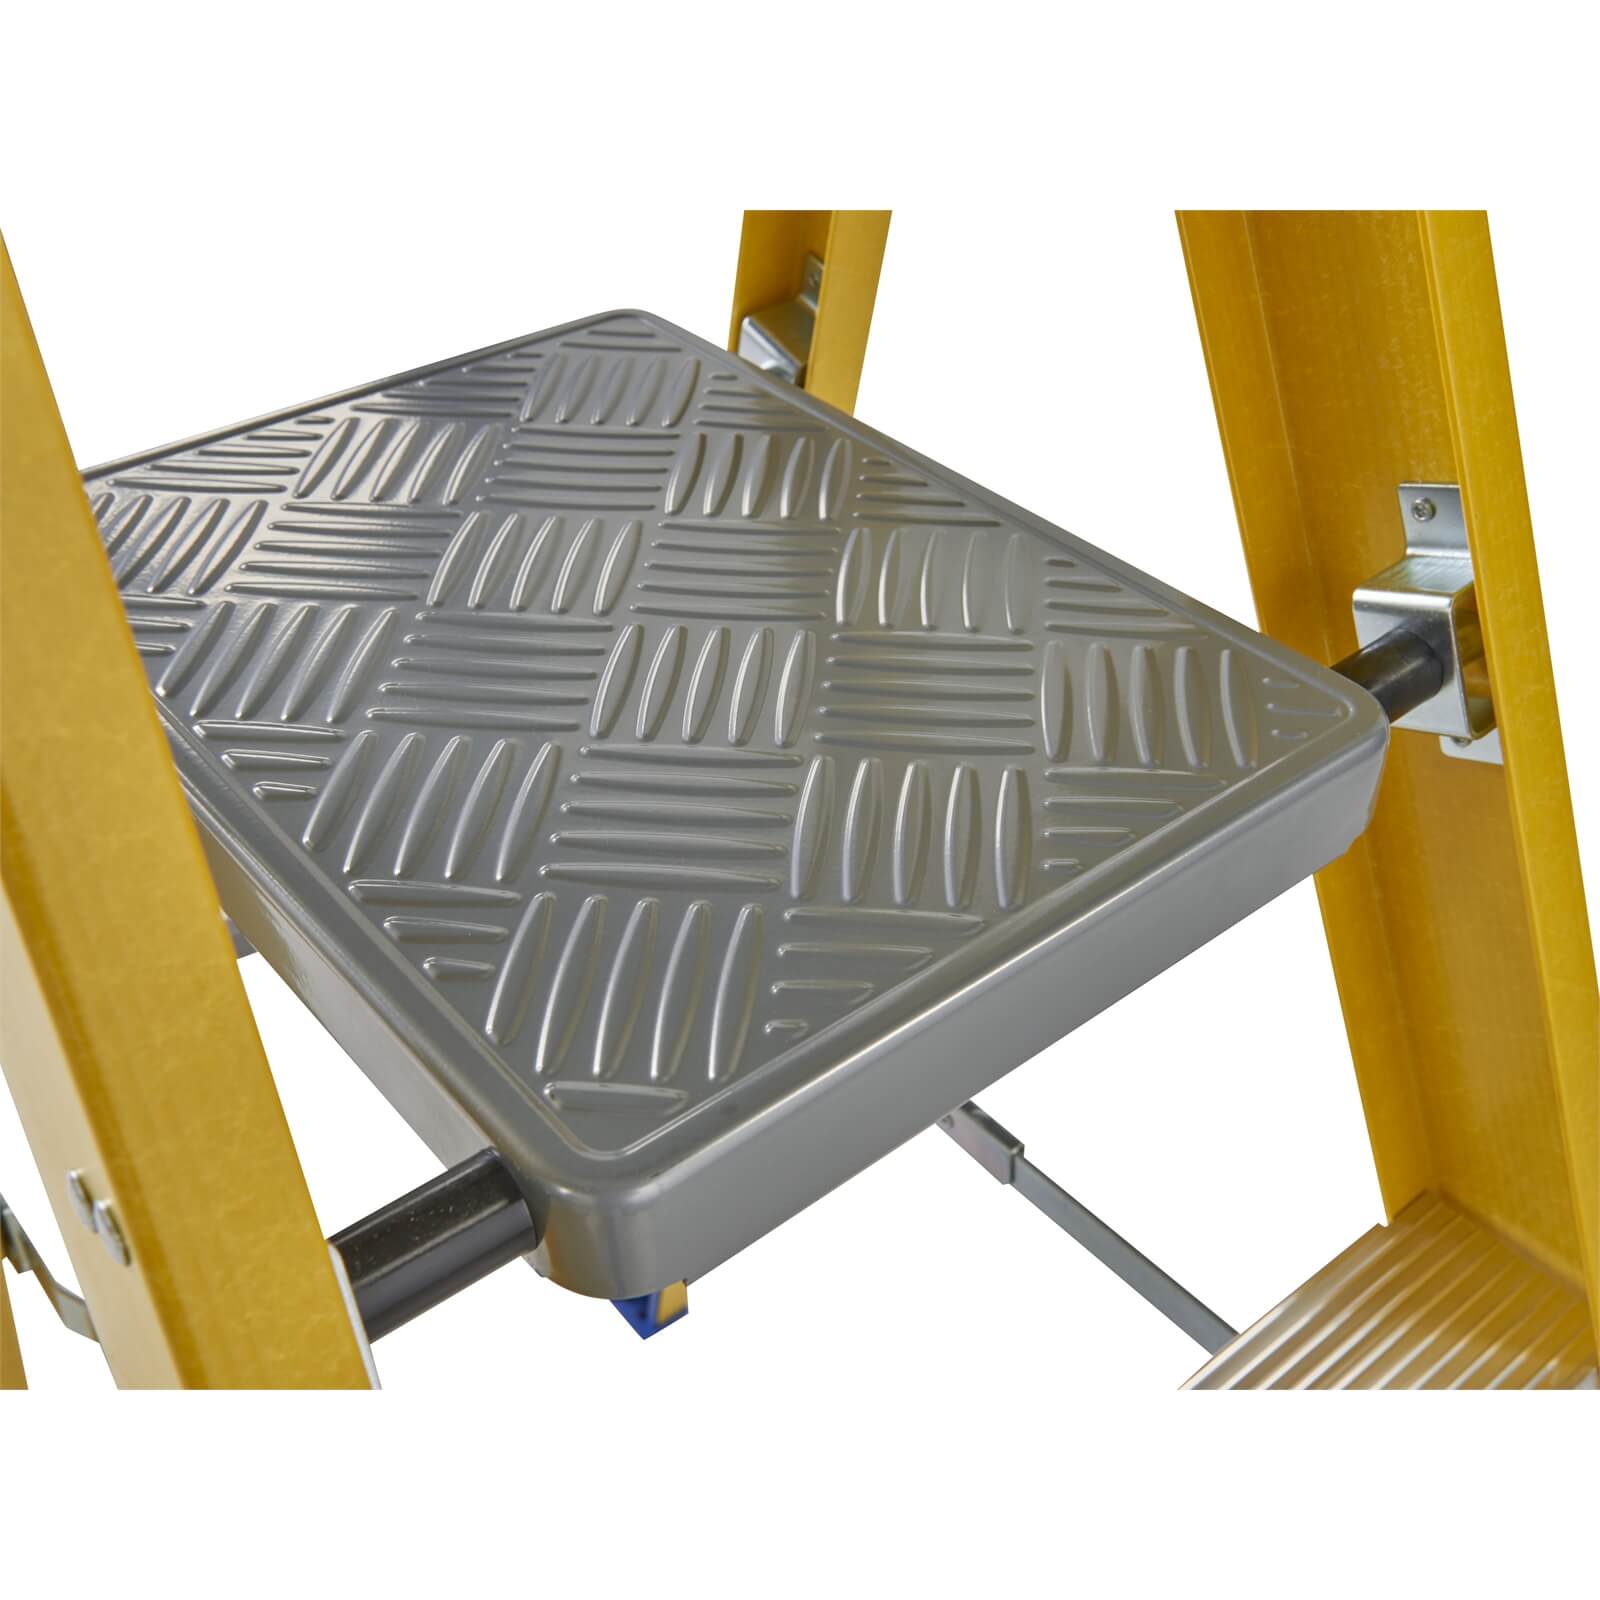 Werner Fibreglass Platform Step Ladder - 2 Tread